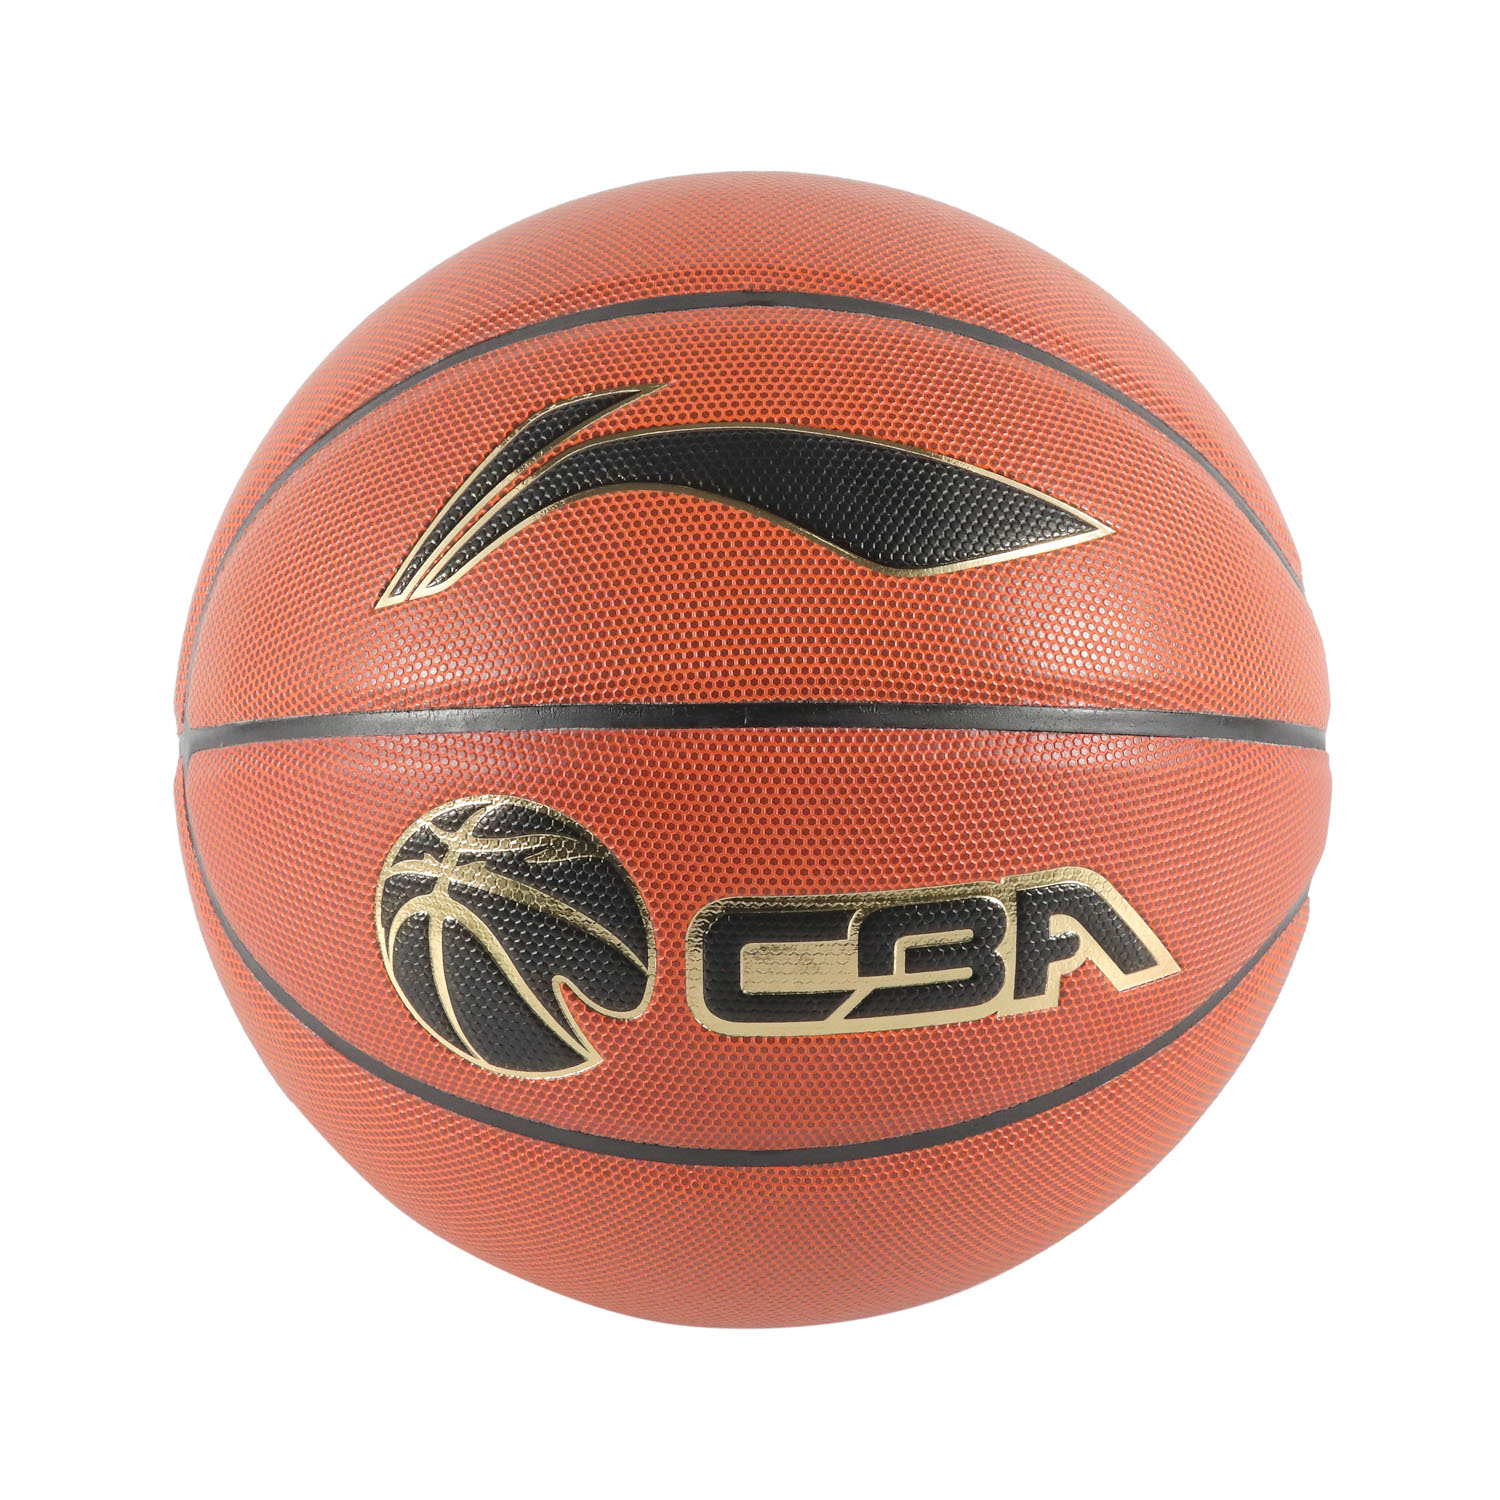 Personalice su propio logotipo Pelota de baloncesto Baloncesto de microfibra de alta calidad